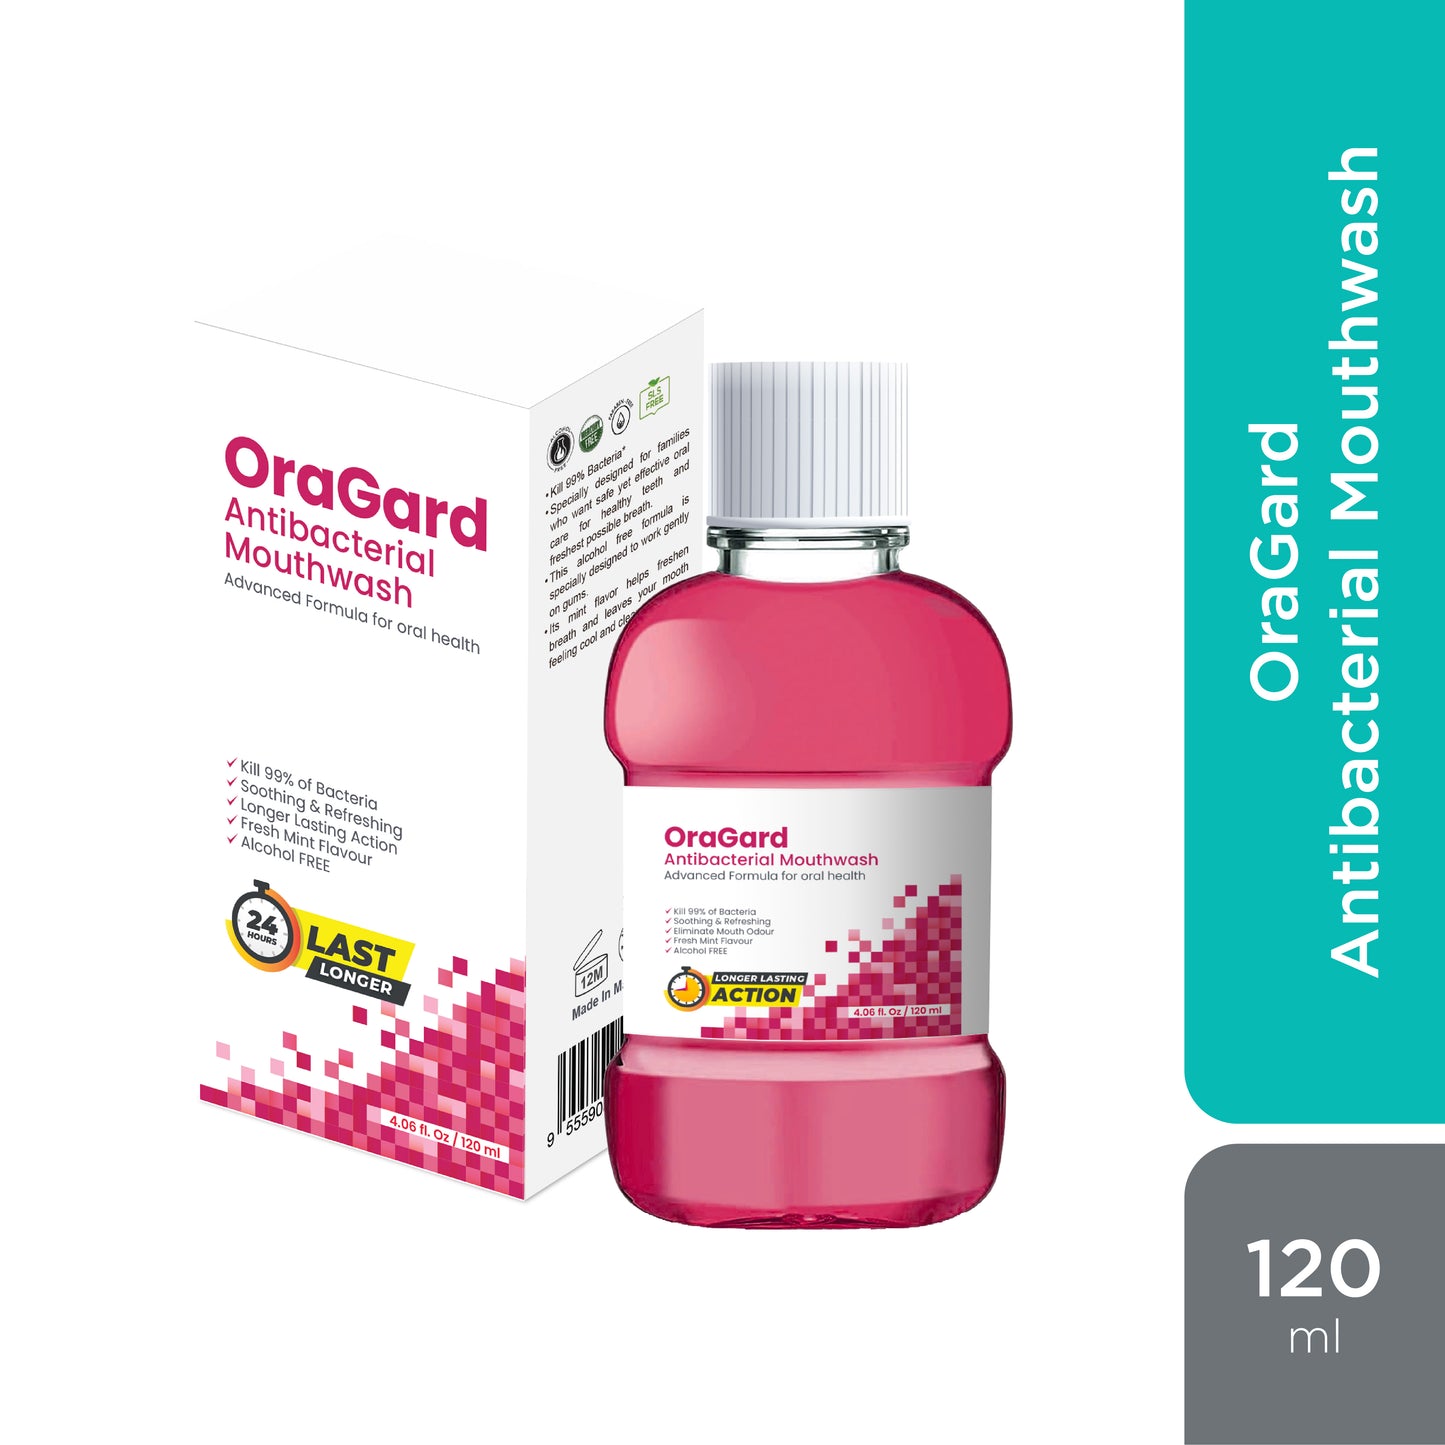 OraGard Antibacterial Mouthwash